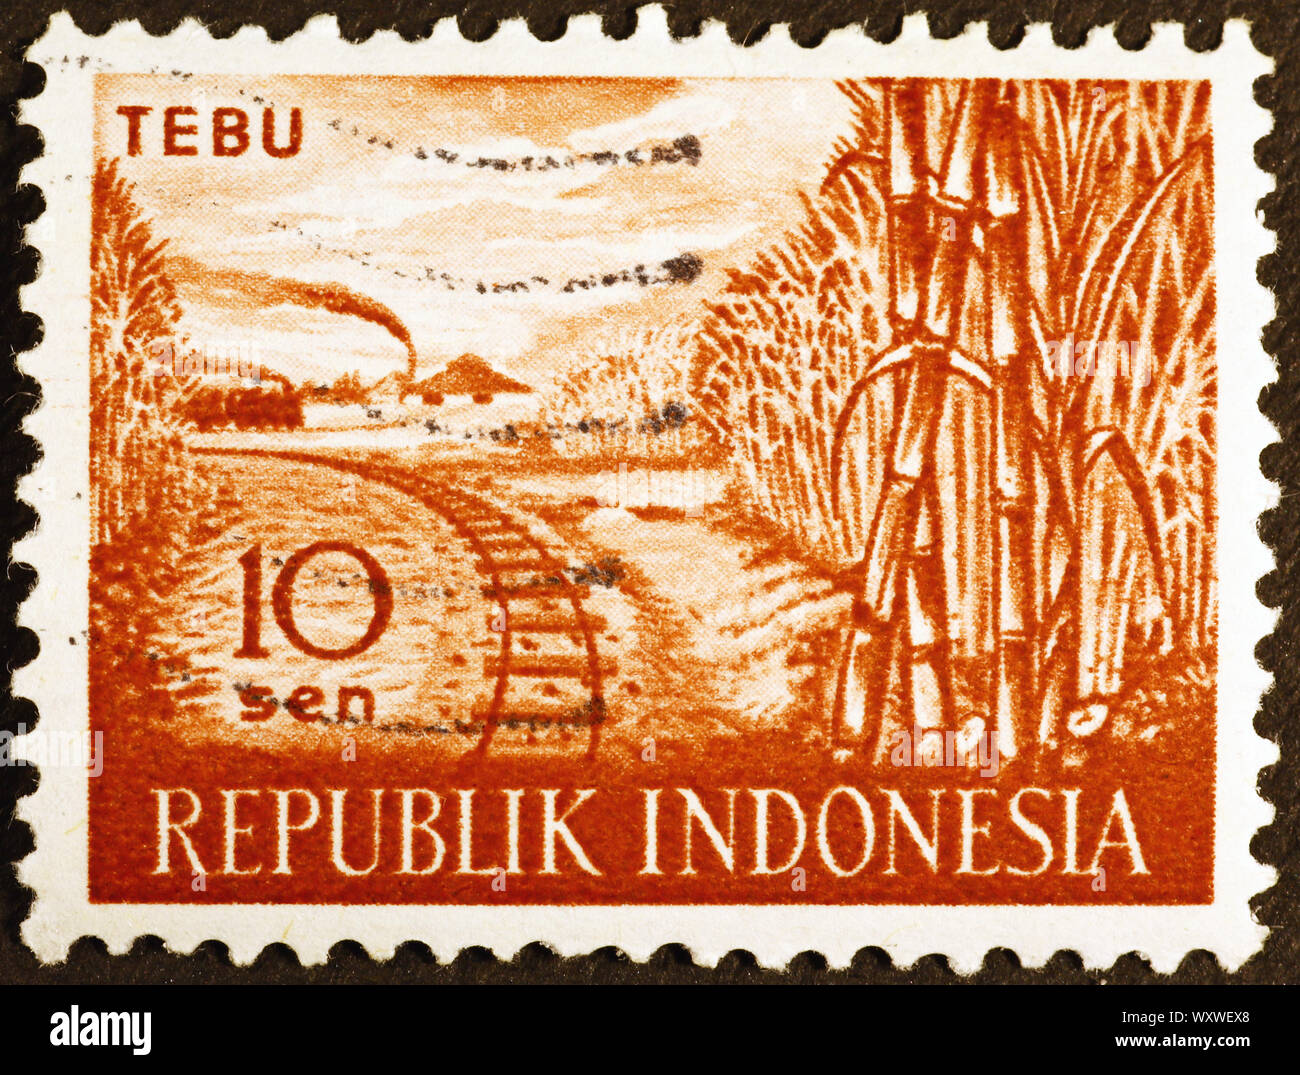 Zuckerrohrplantagen auf indonesischen Briefmarke Stockfoto